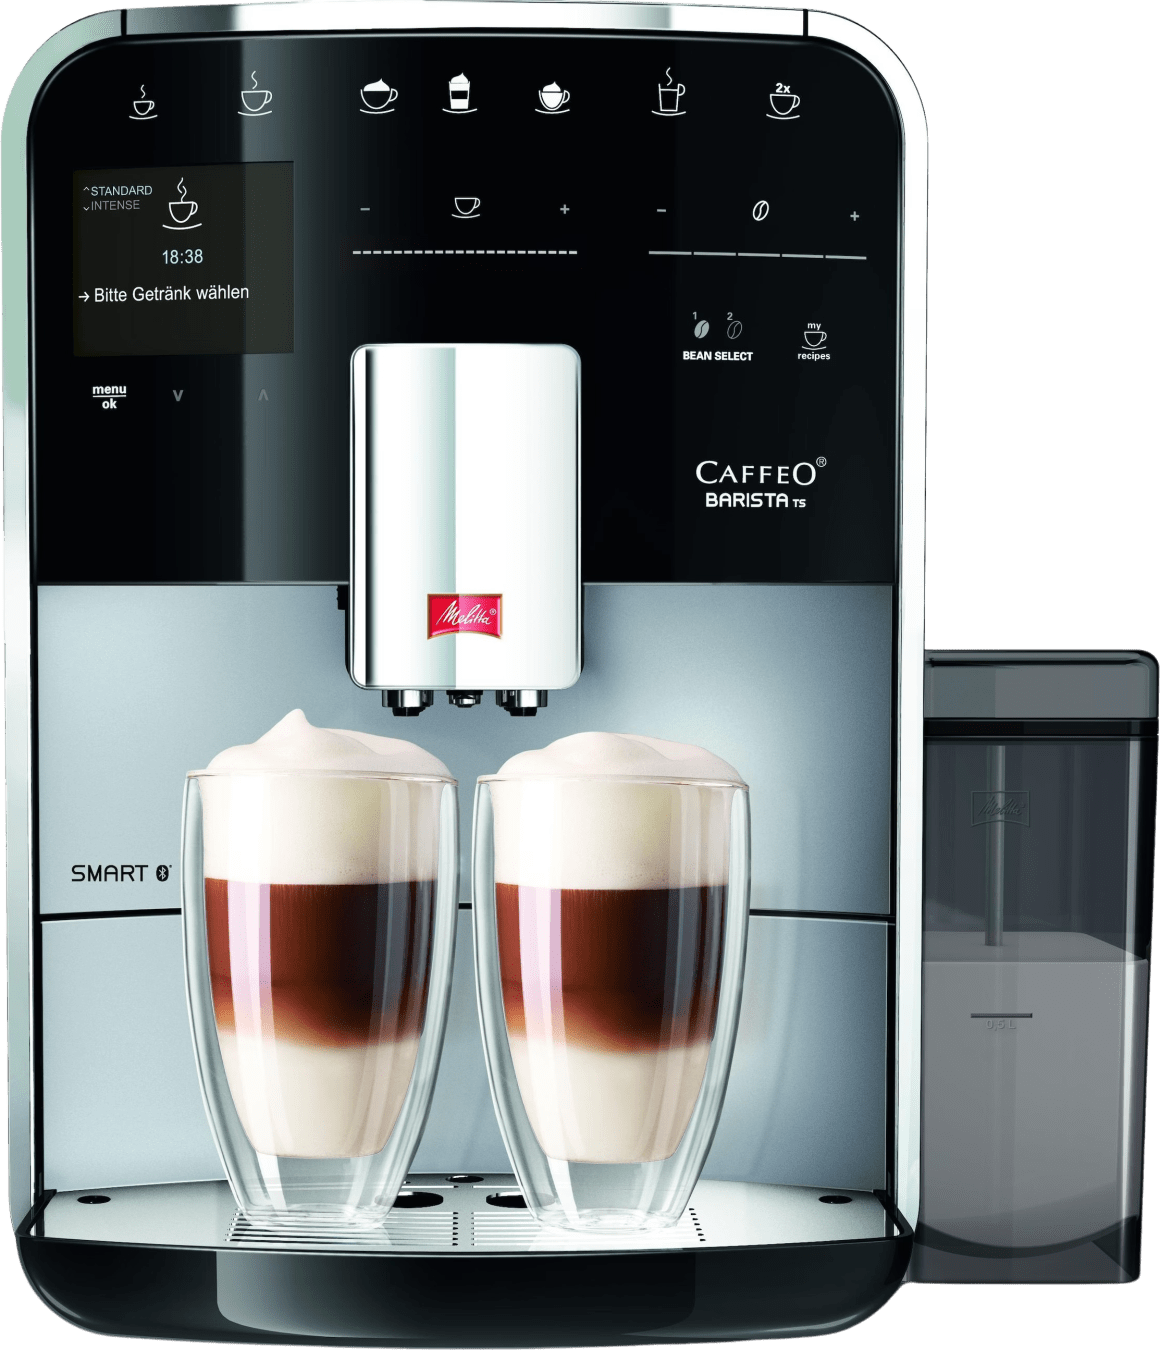 Melitta Caffeo Barista TS Smart Kaffeemaschine von Melitta